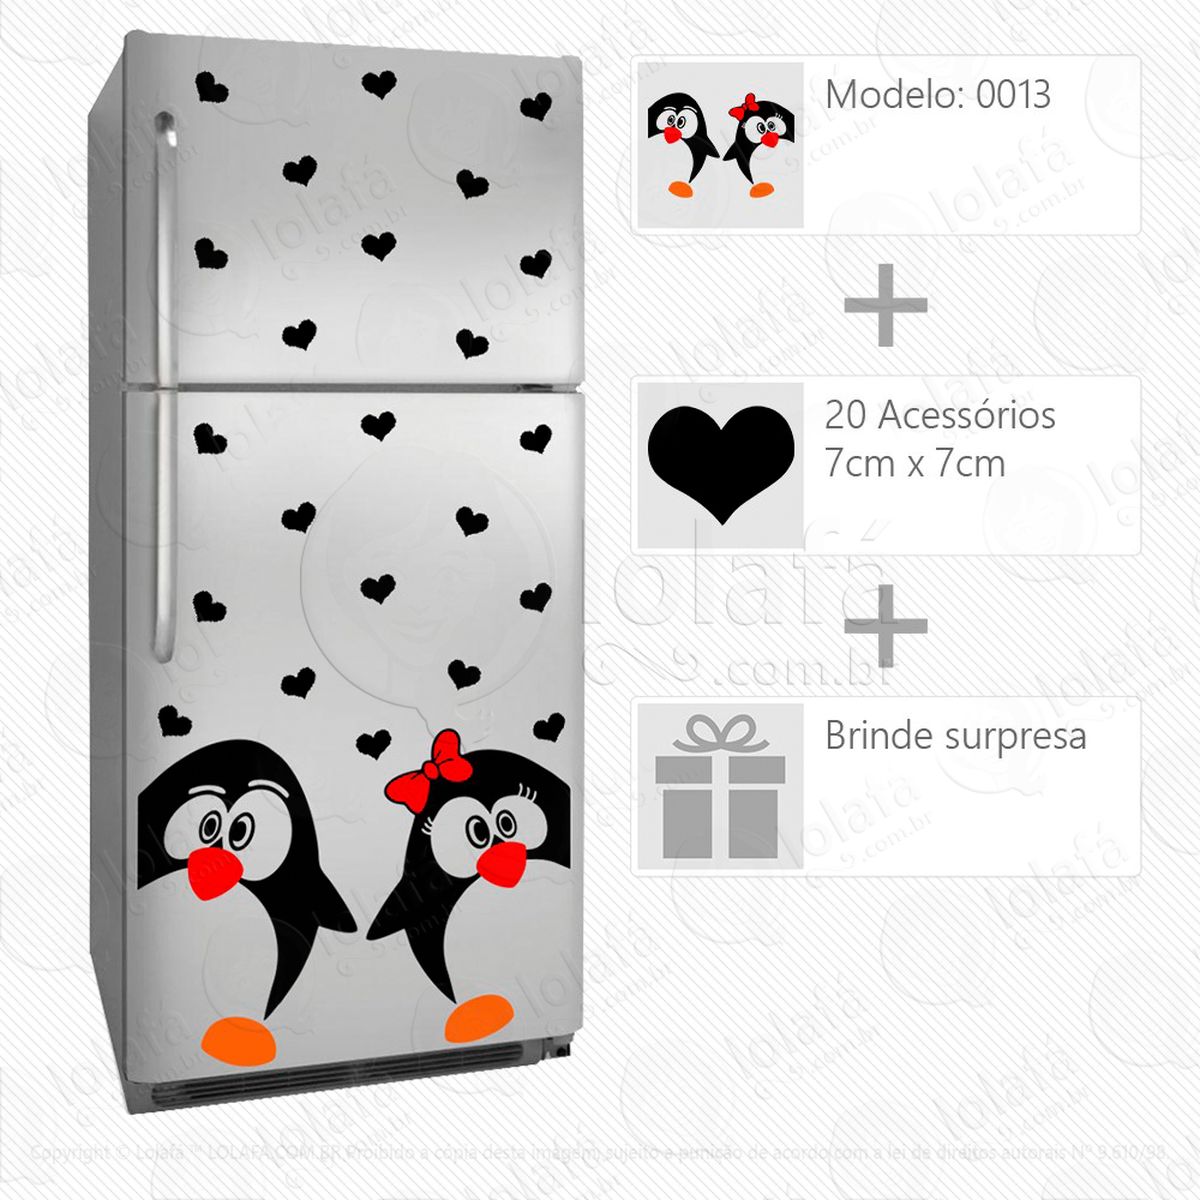 pinguins adesivo para geladeira e frigobar - mod:13